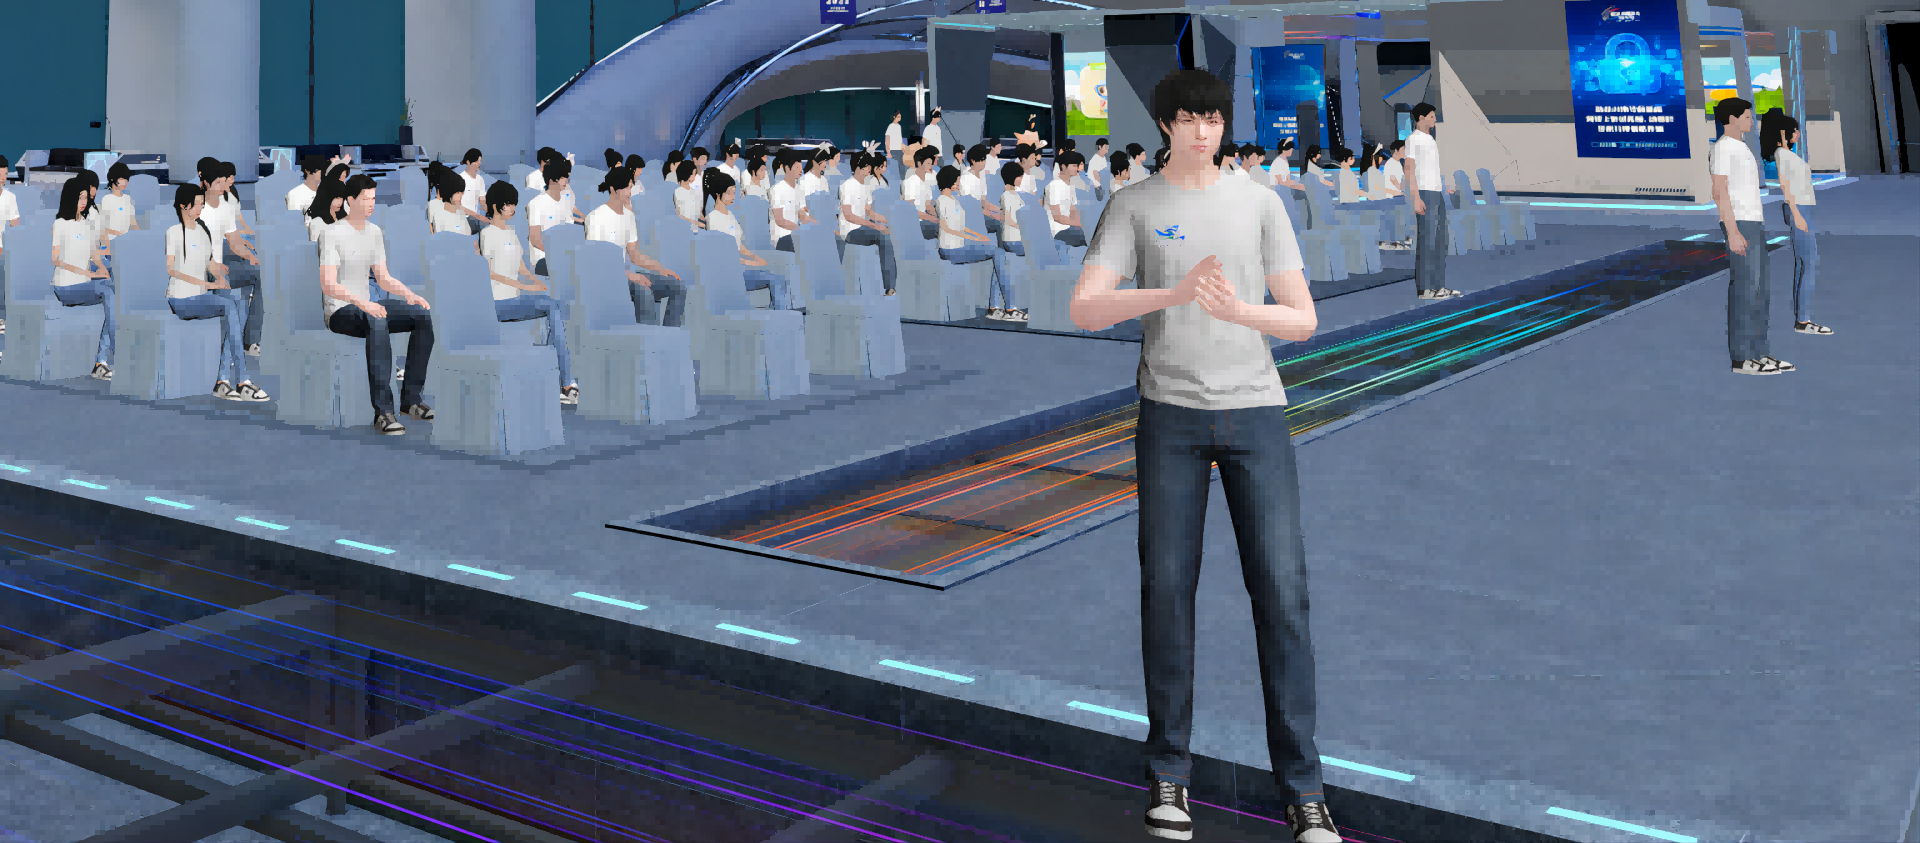 图片展示了一个虚拟现实场景，一名年轻的动画人物站在前方，背景是坐着的人群和现代化的室内环境。